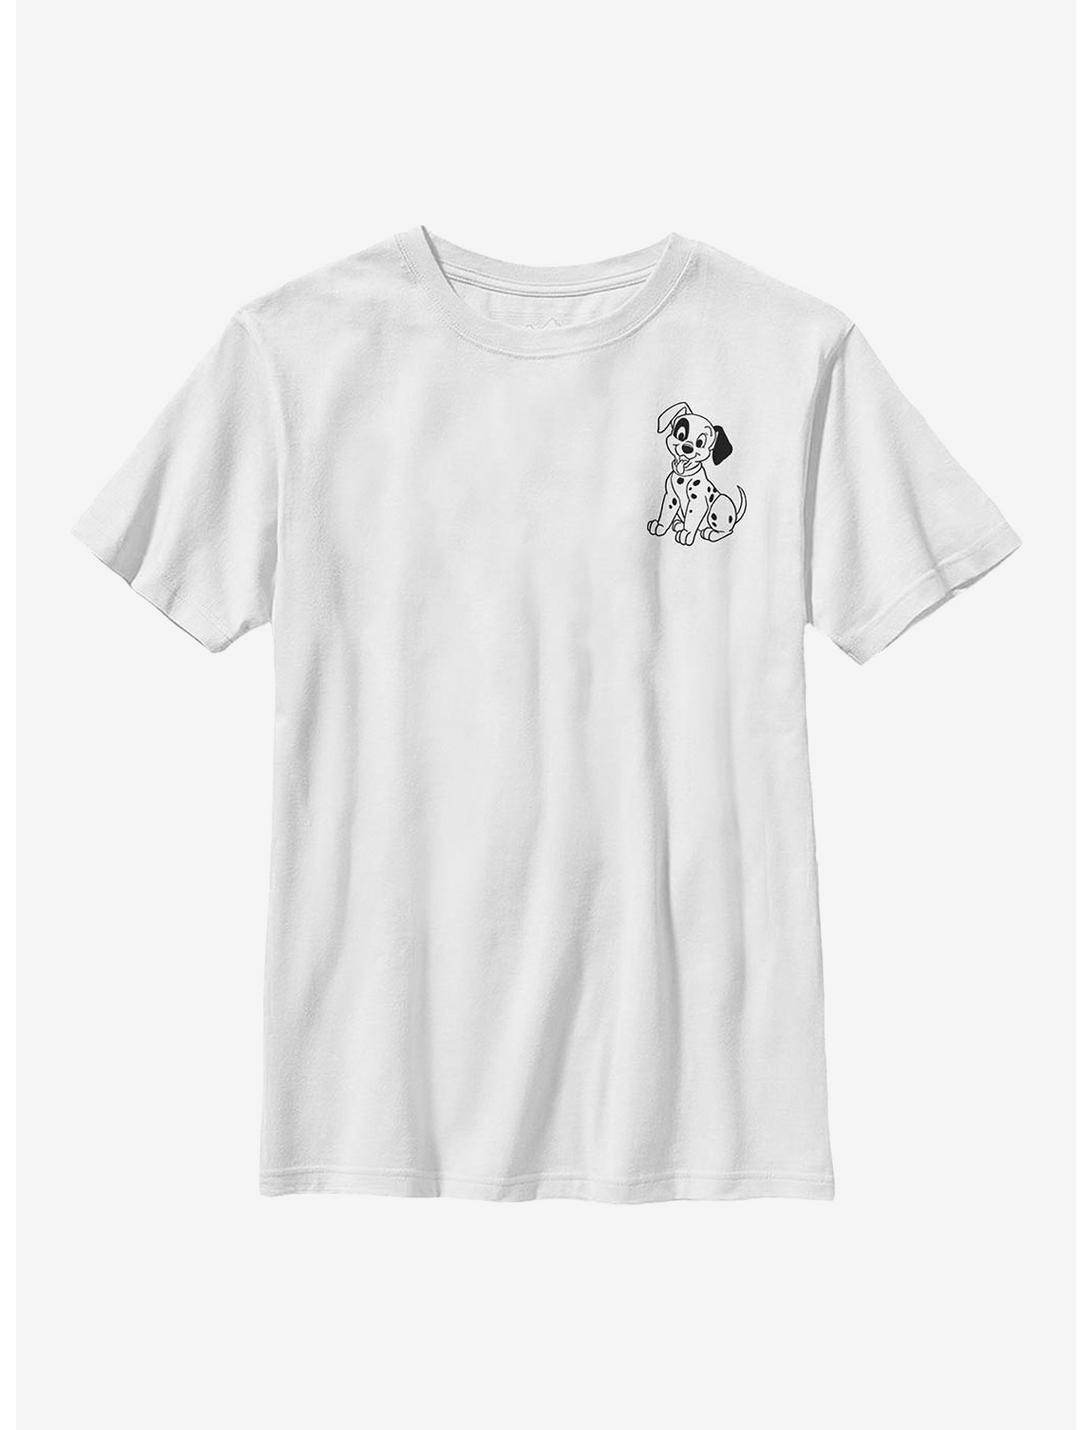 Disney 101 Dalmatians Patch Line Youth T-Shirt, WHITE, hi-res